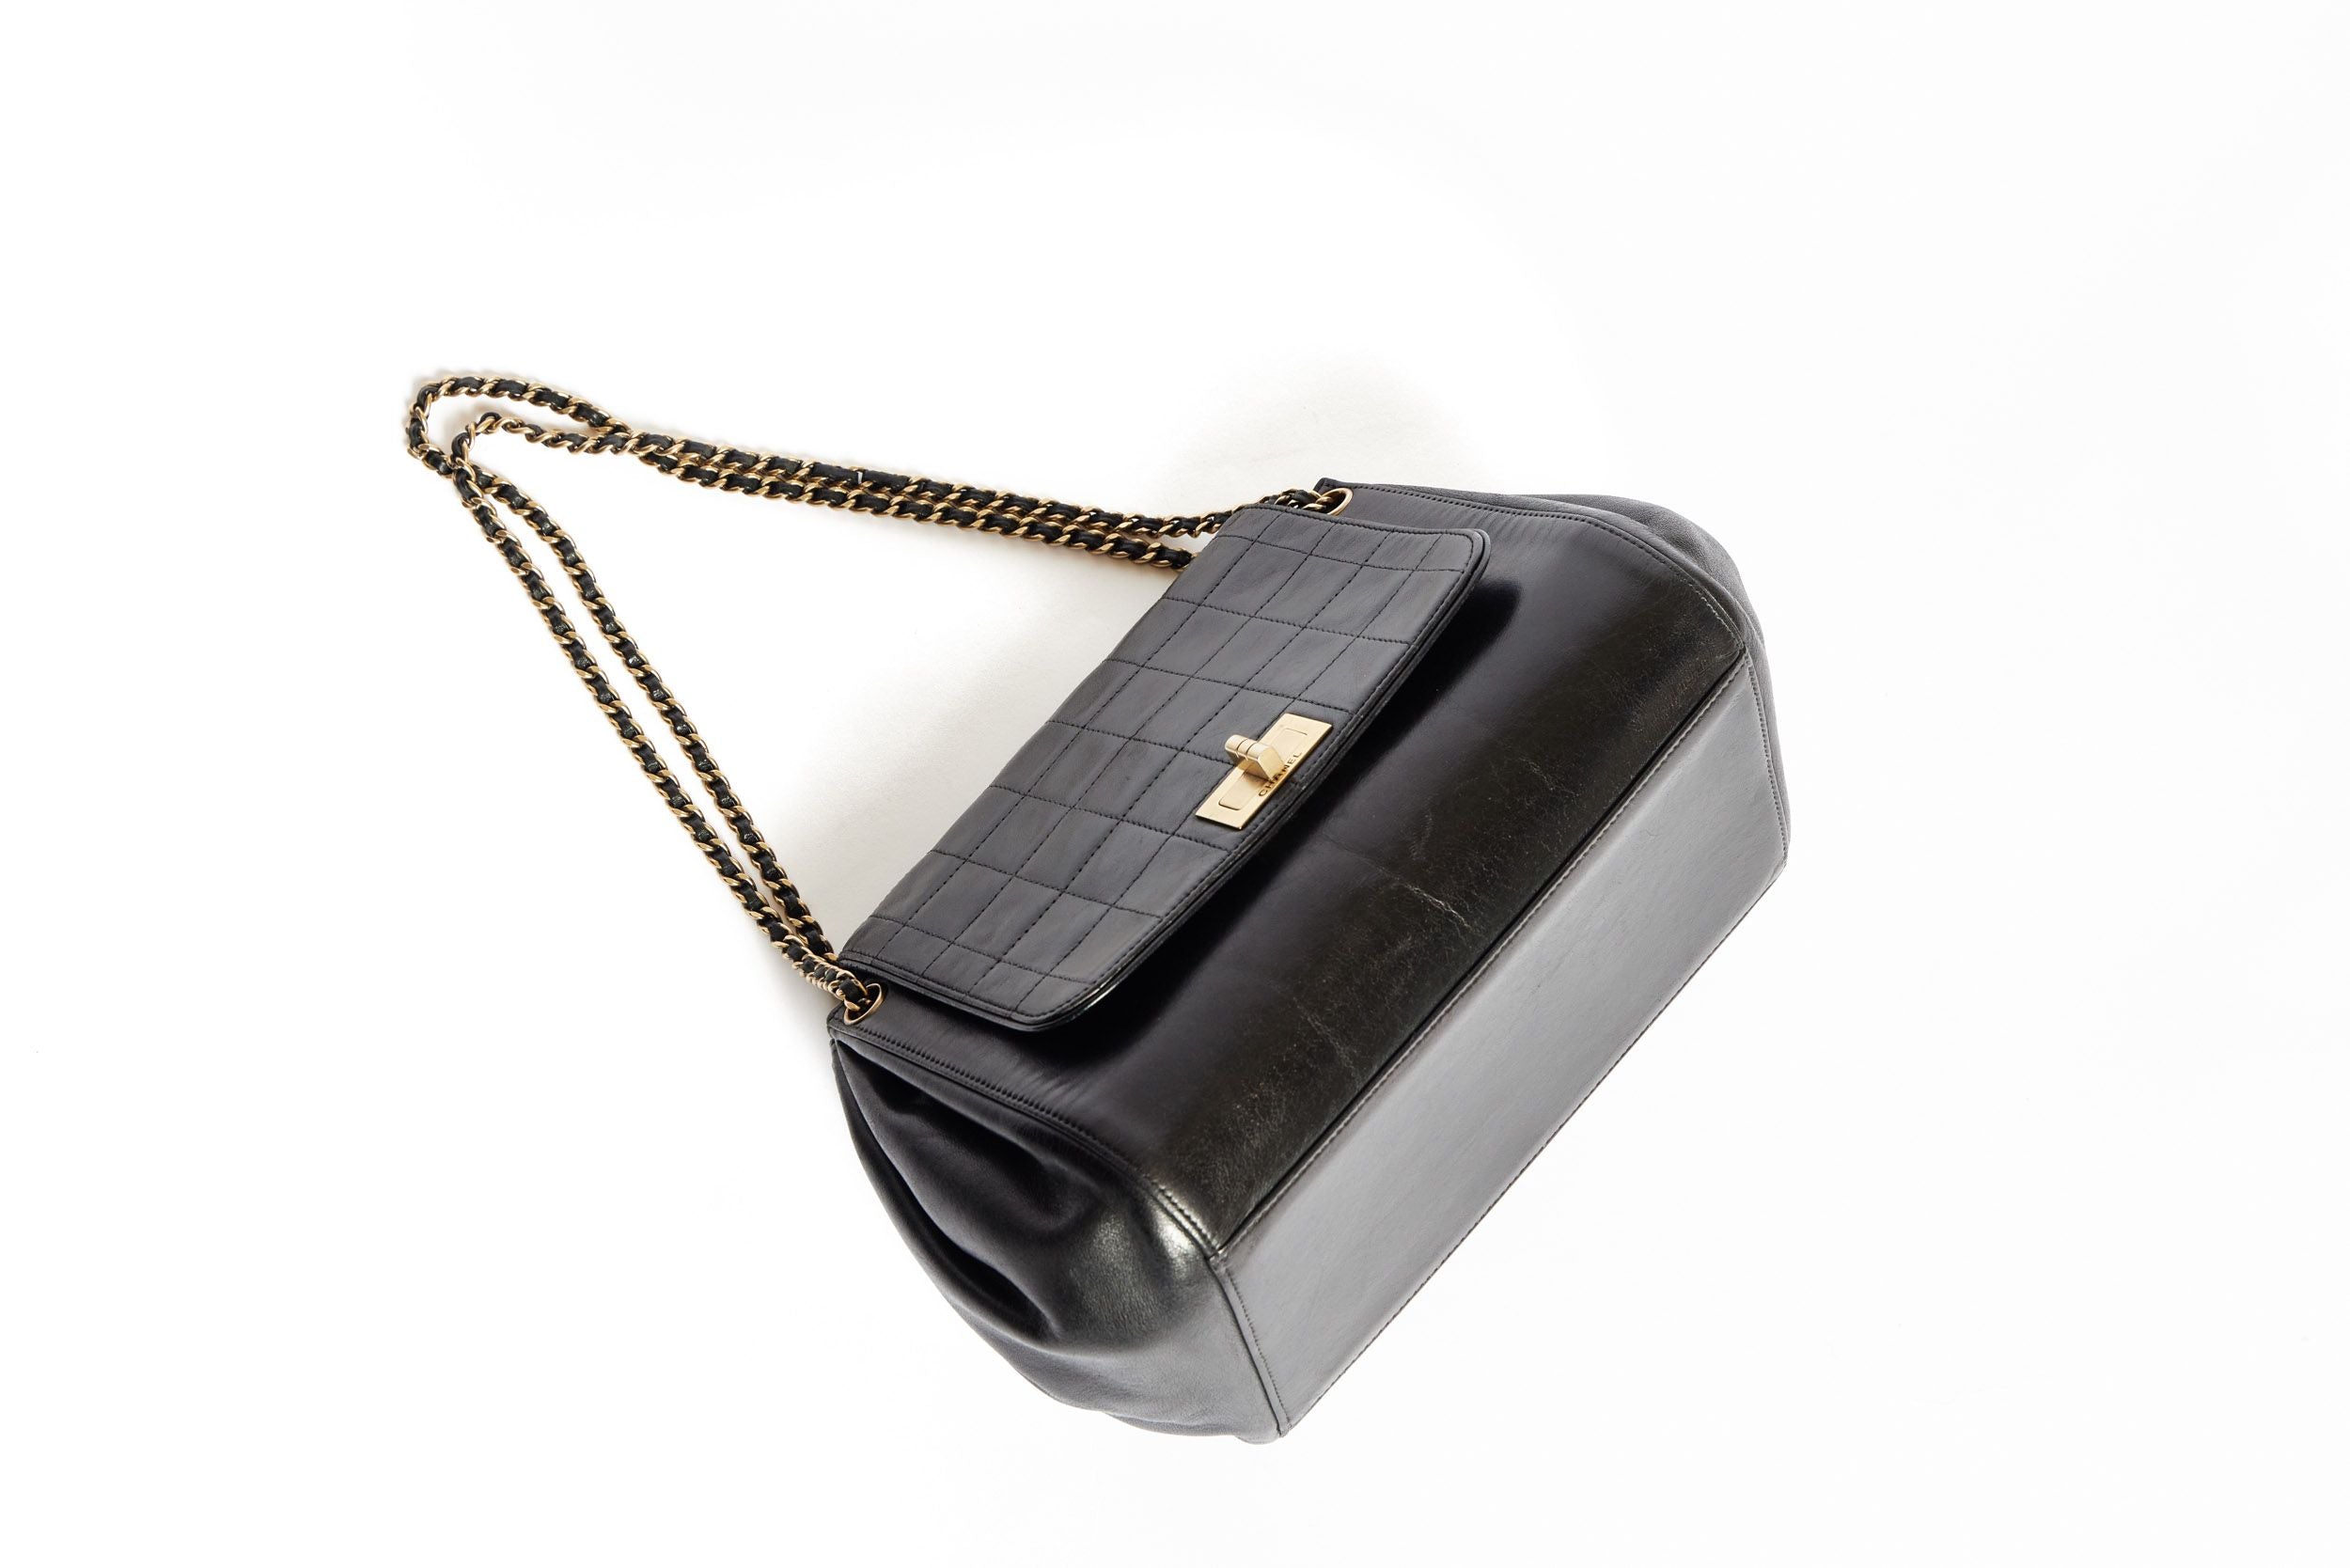 Chanel Black Accordion Bag - Vintage Lux